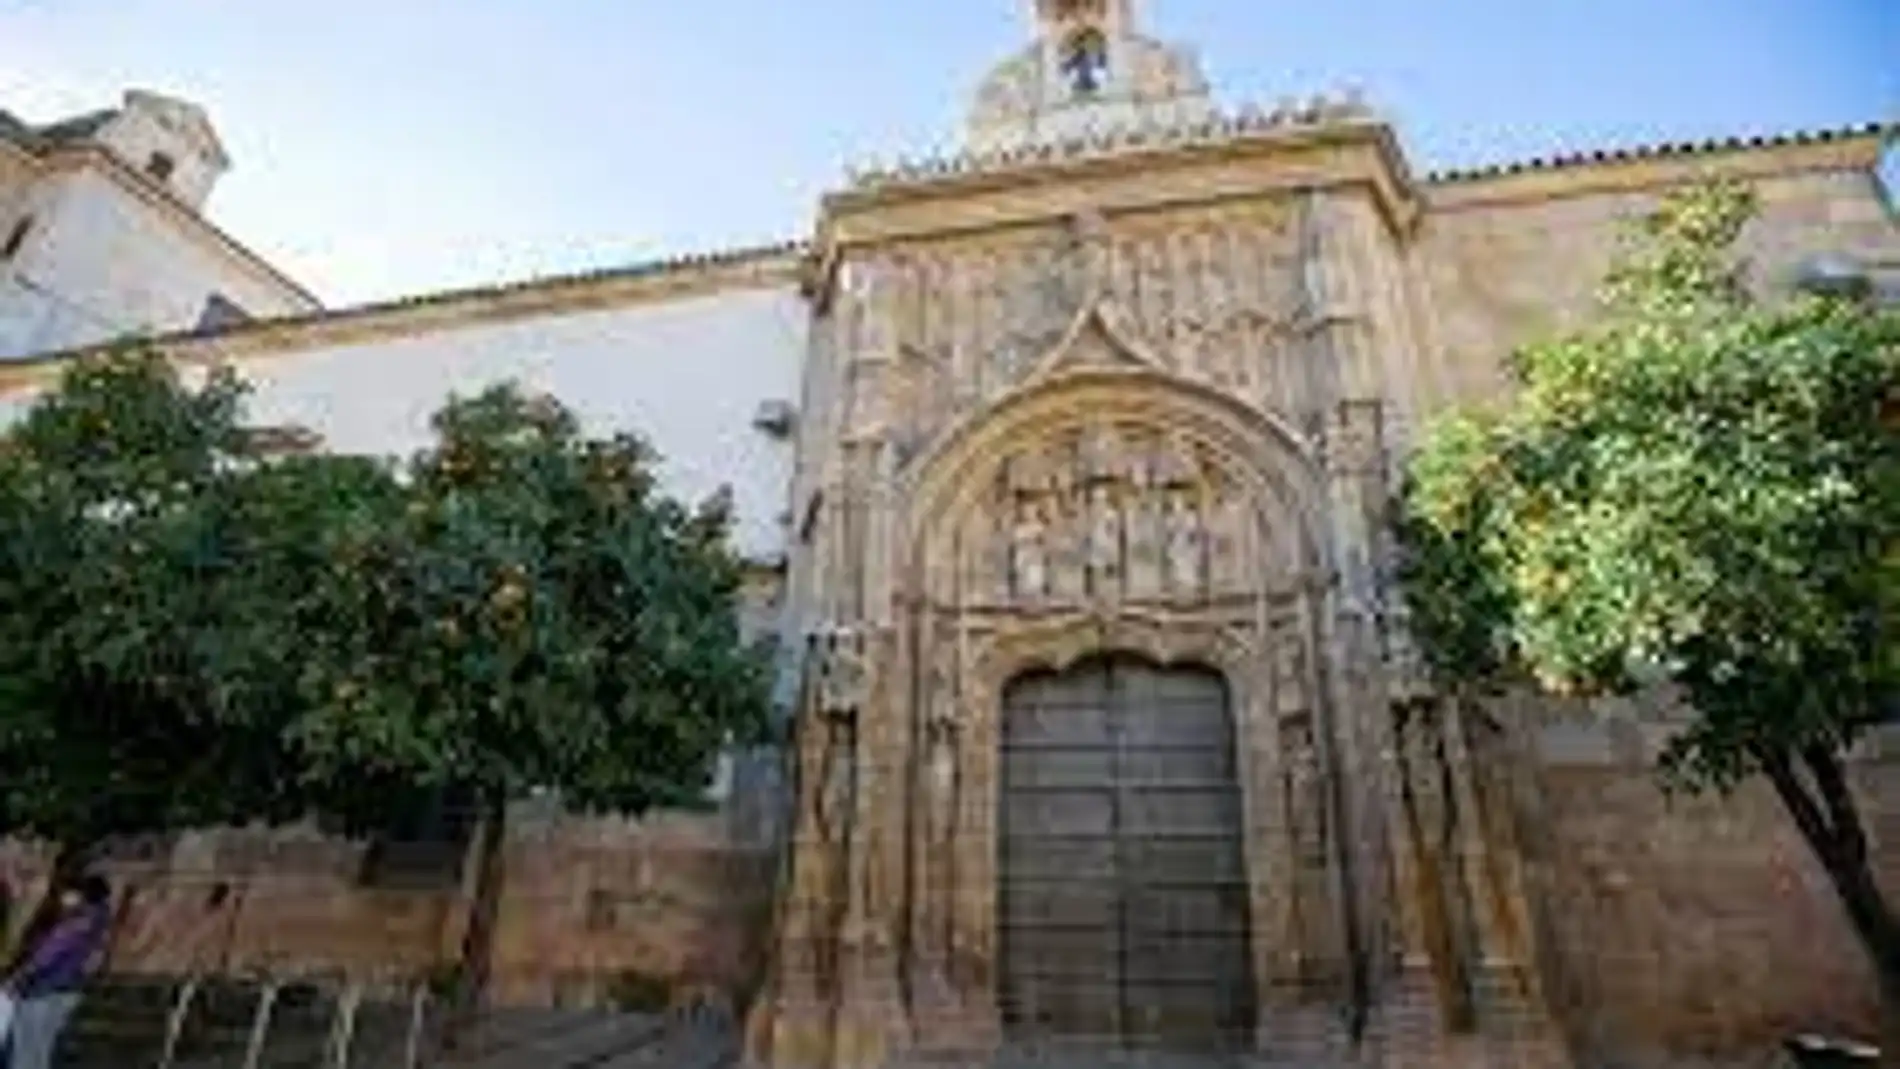 Palacio de Congresos de Córdoba